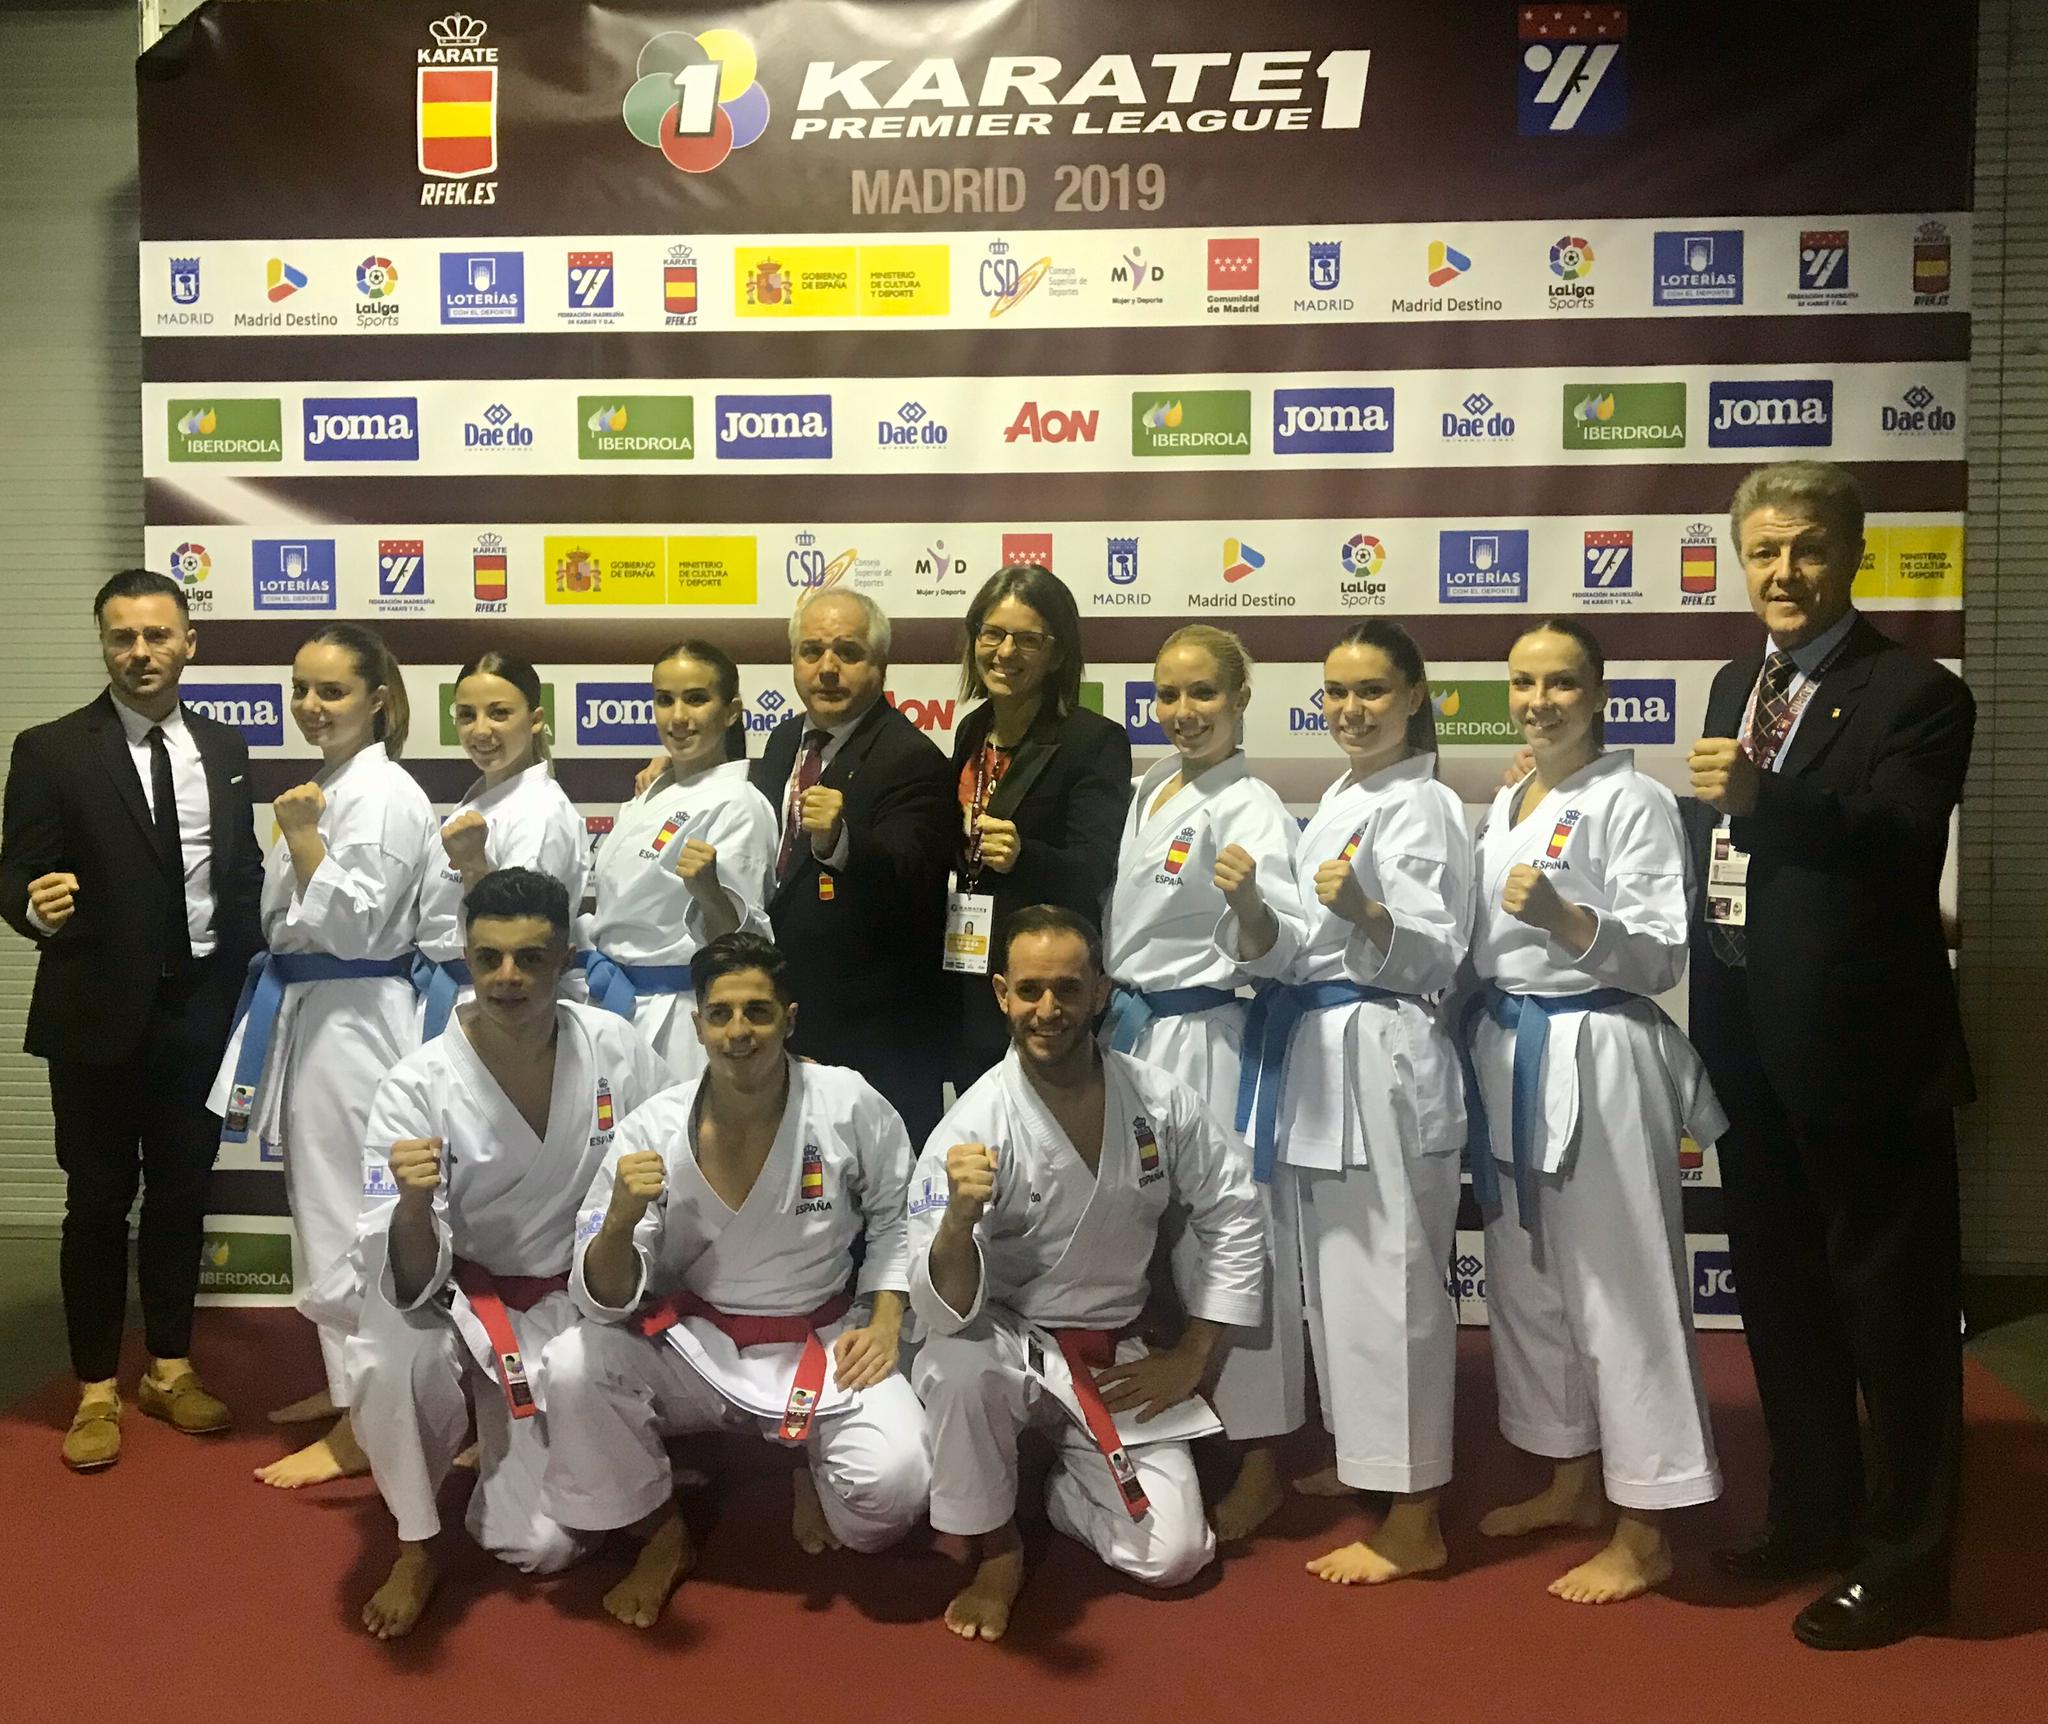 Las históricas ocho medallas del karate español en la Premier de Madrid  (II): Sandra, pentacampeona de la Quinta Premier, Damián ORO en Madrid y 3  Bronces para los katas, por equipos. |